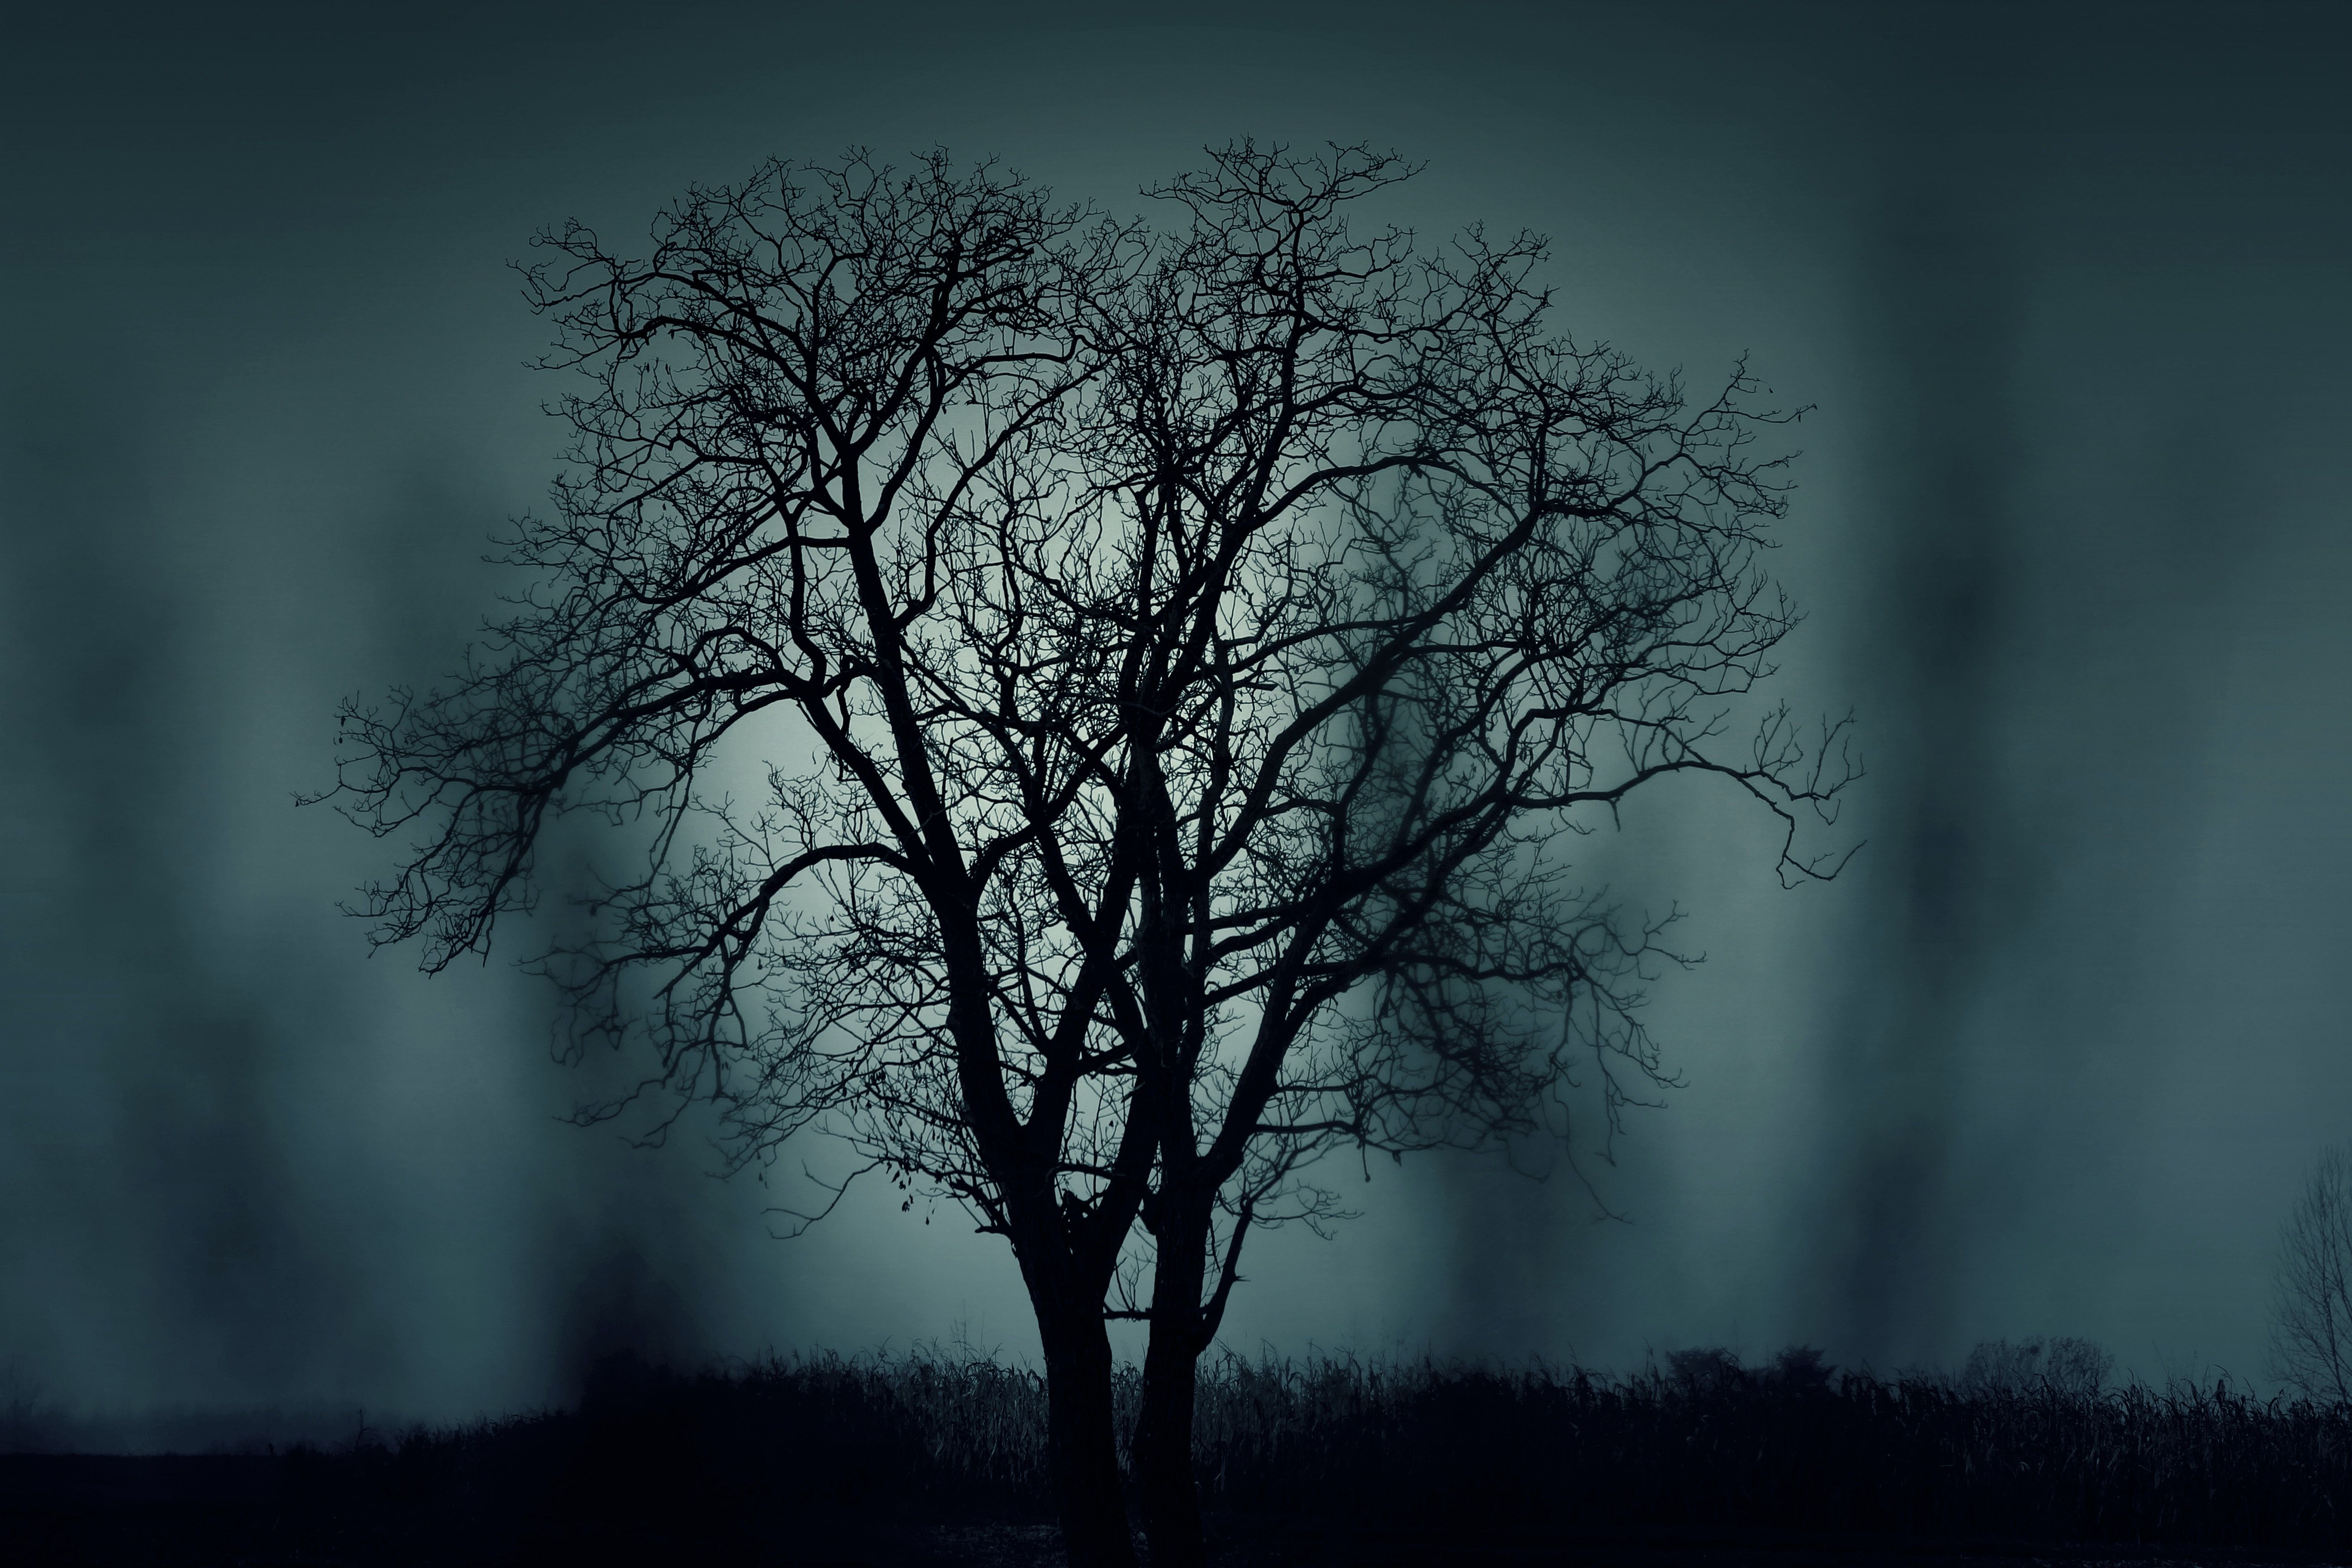 Black Tree at Night Time · Free